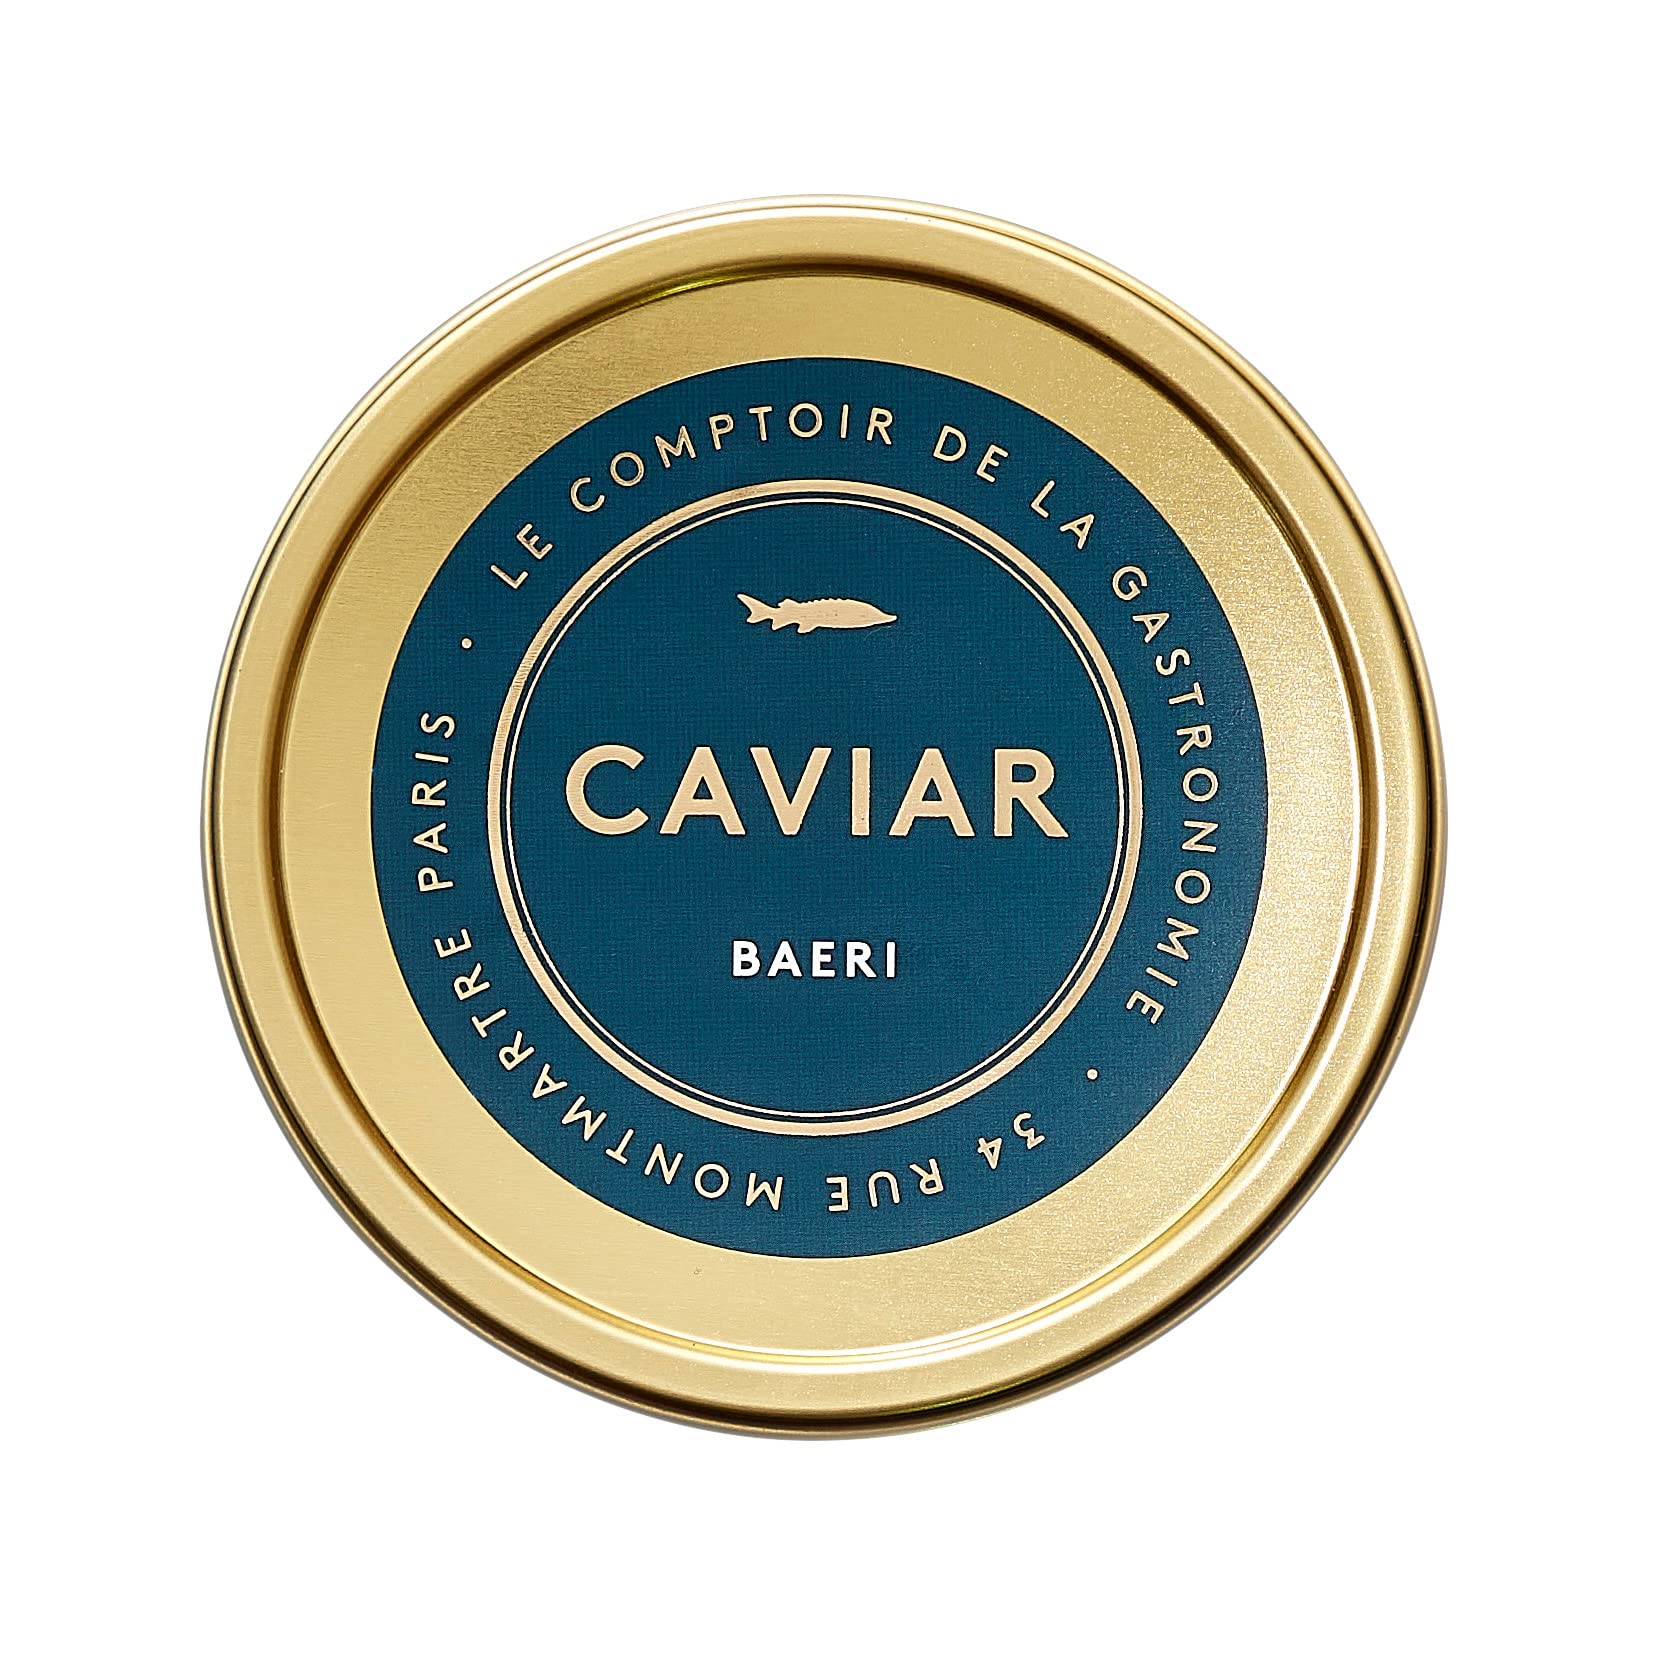 grande remise COMPTOIR DE LA GASTRONOMIE - Caviar Baerii Signature - boite de 250g djSDNnBKB en France Online